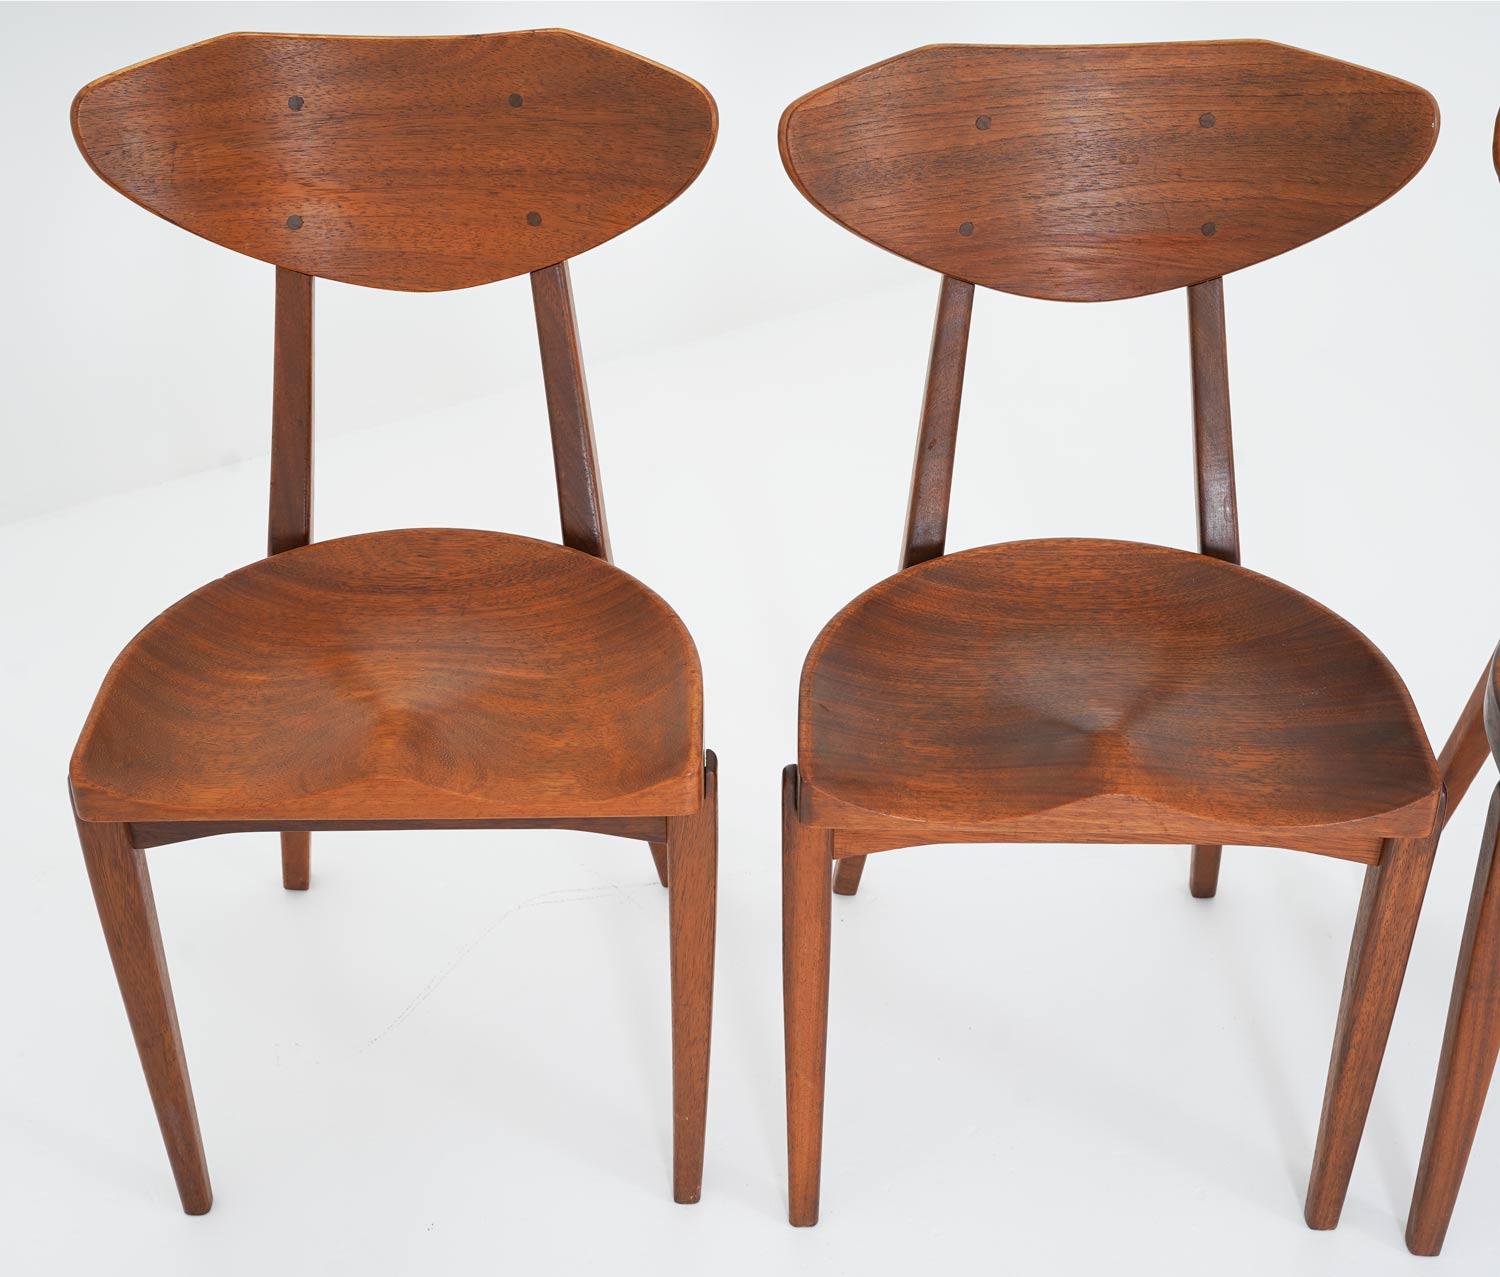 6 Esszimmerstühle von Richard Jensen und Kjaerulff Rasmussen, Dänemark.
Diese Stühle sind aus massivem Teakholz gefertigt. Das Design ist von traditionellen Milchhockern inspiriert, mit den schön geschnitzten Sitzen. Die Stühle bieten einen